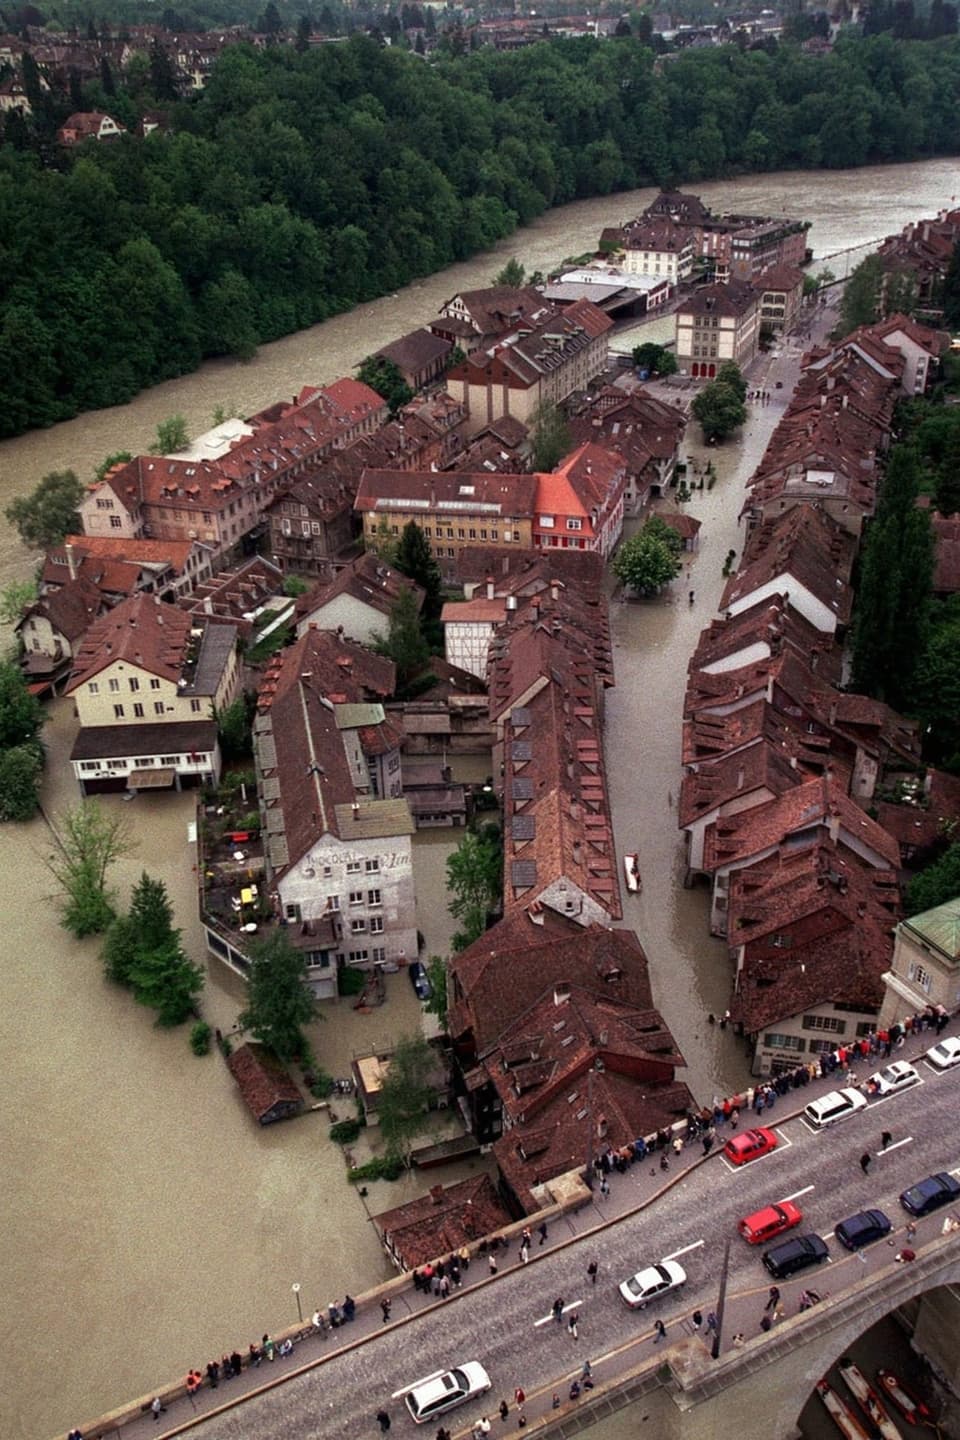 Überschwemmte Stadt mit Häusern und Strassen umgeben von braunem Wasser.